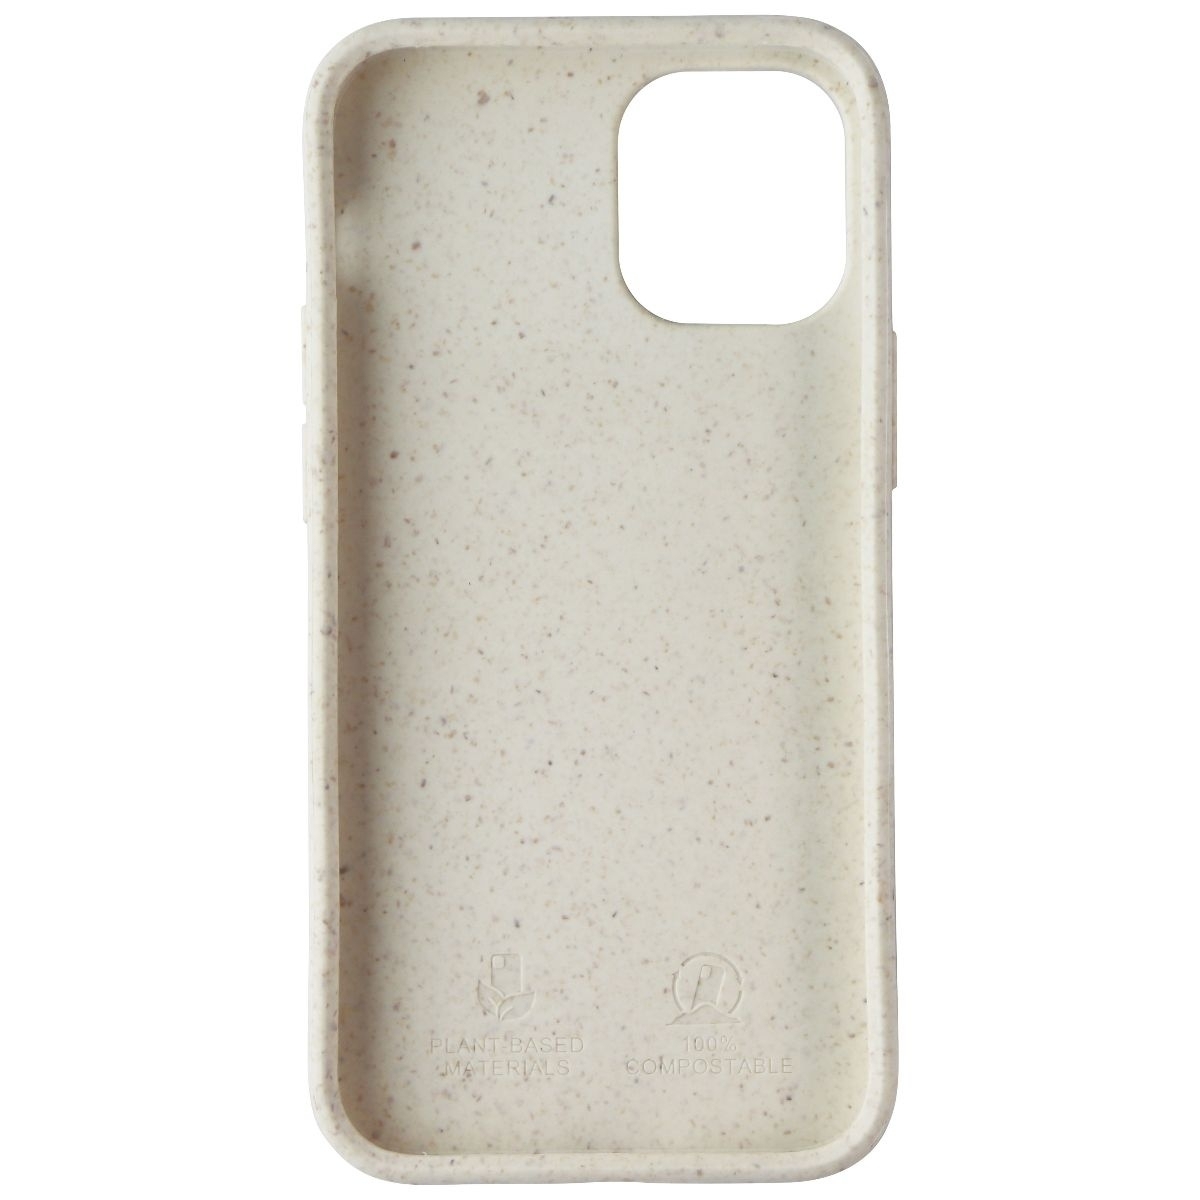 Nimbus9 Vega Series Biodegradable Case For IPhone 12 Mini - Sandstone